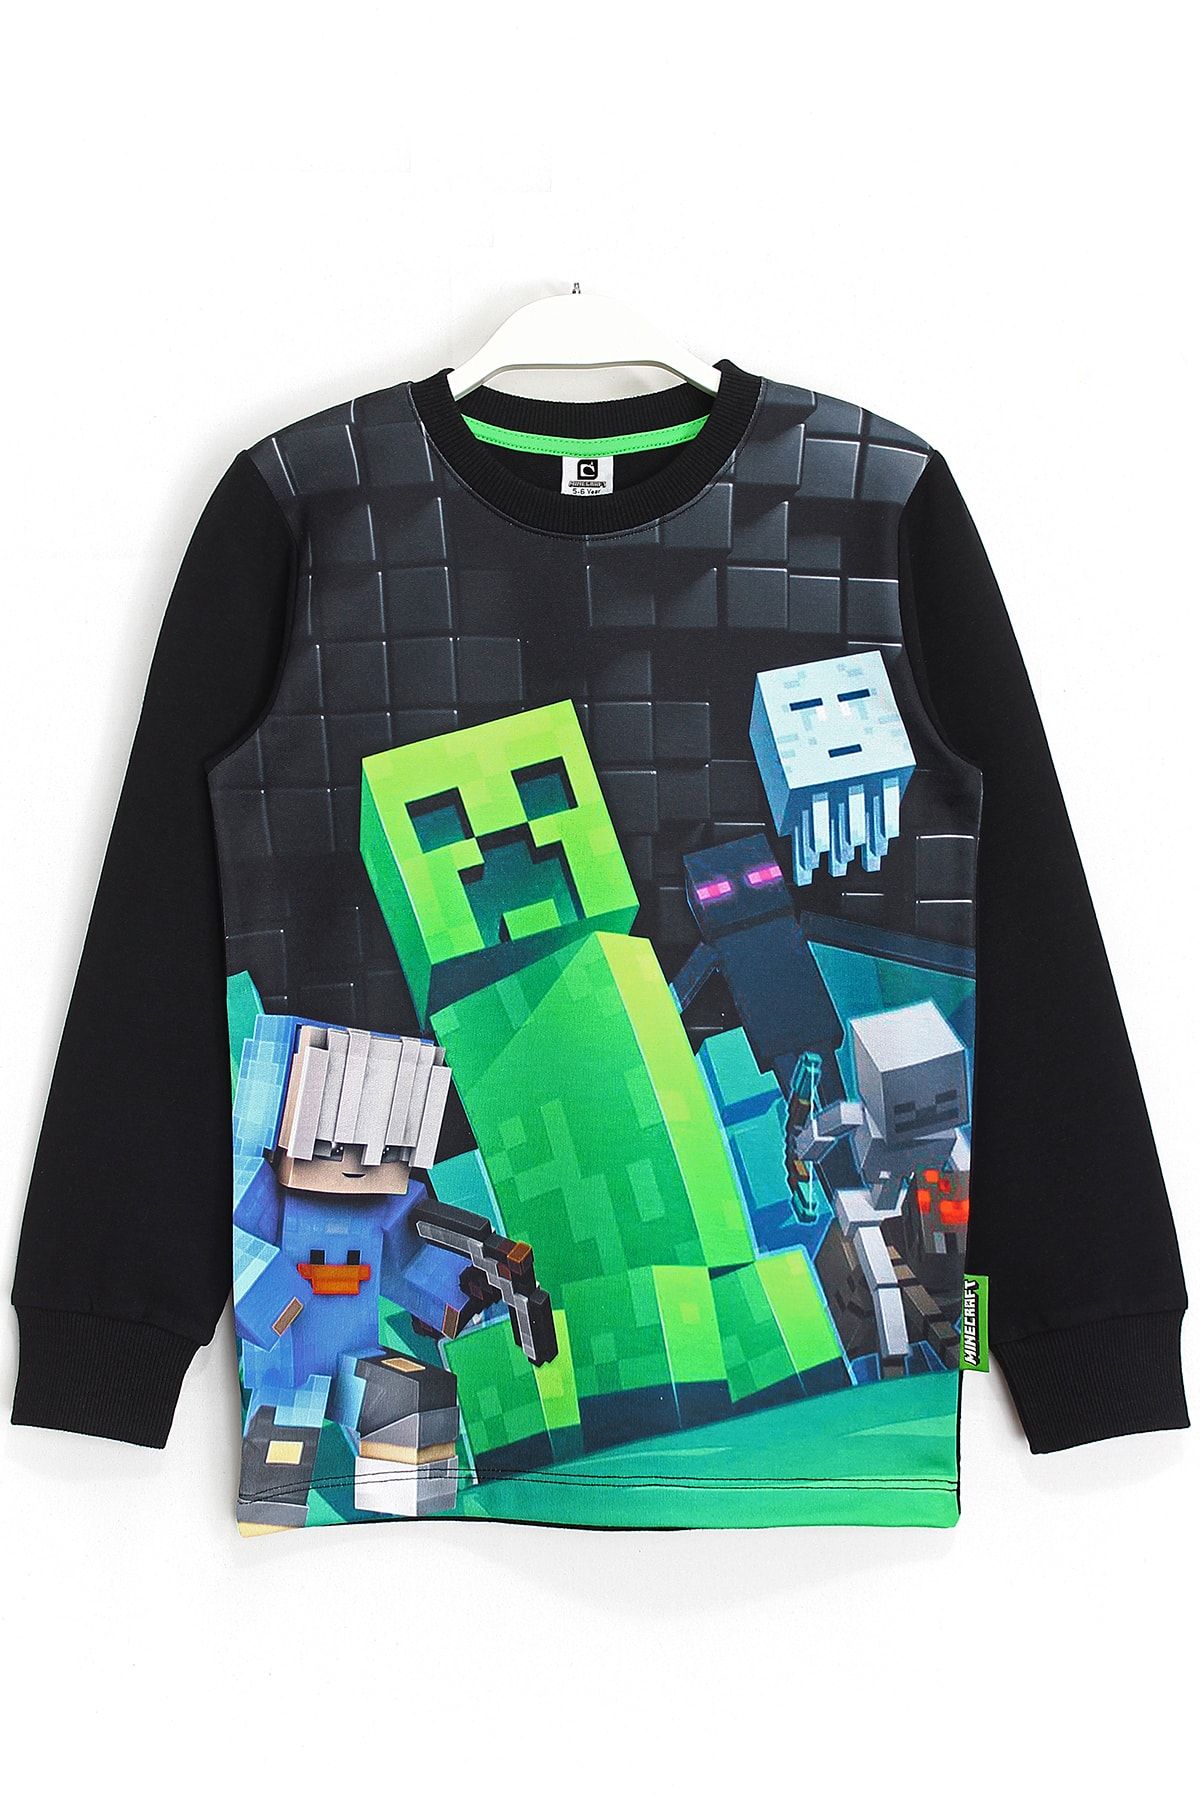 DobaKids Minecraft 3d Dijital Baskı Erkek Çocuk Basic Sweatshirt Siyah